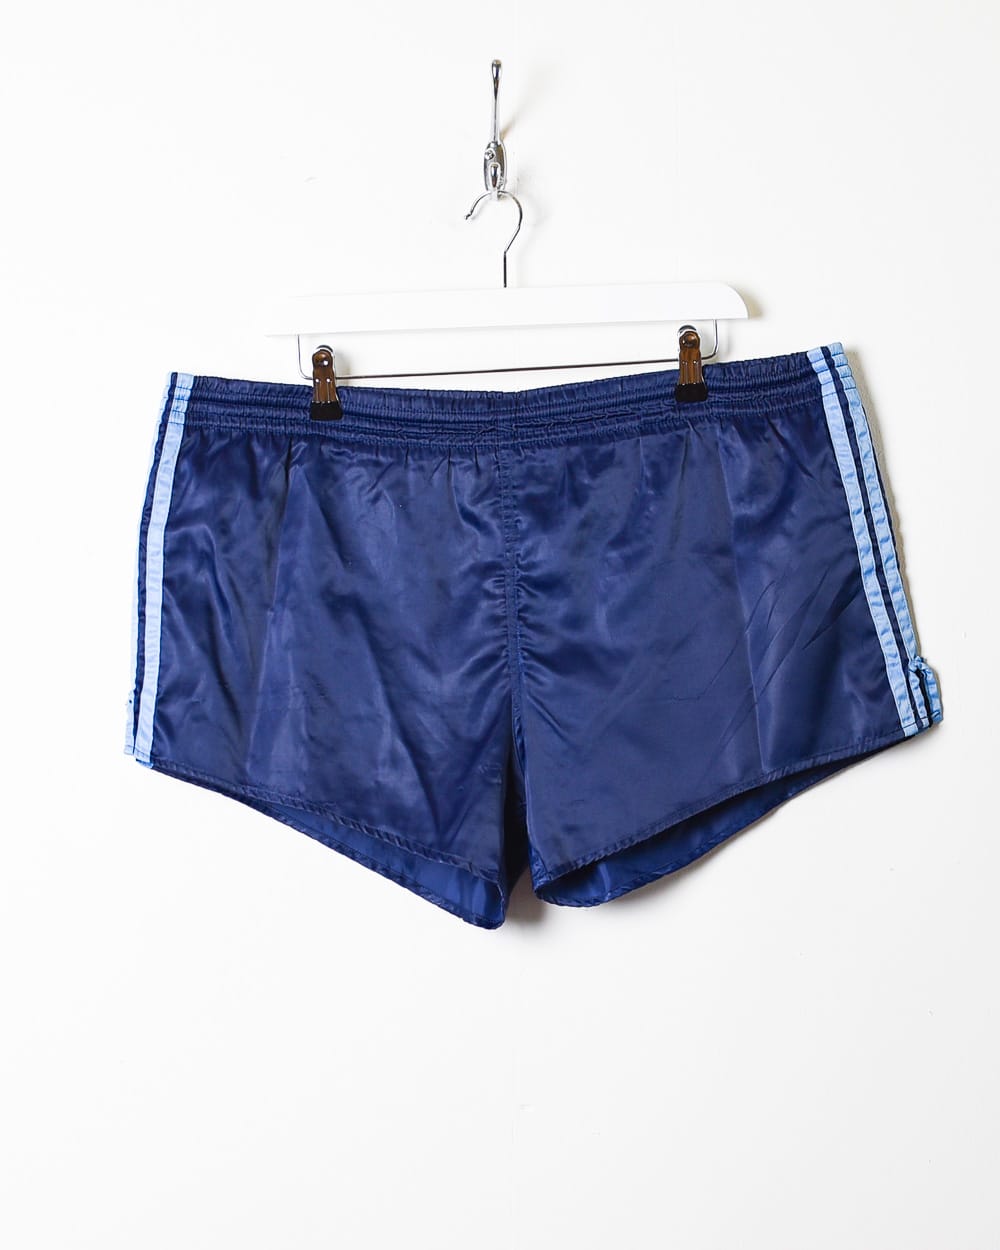 Navy Adidas Short Shorts - Large